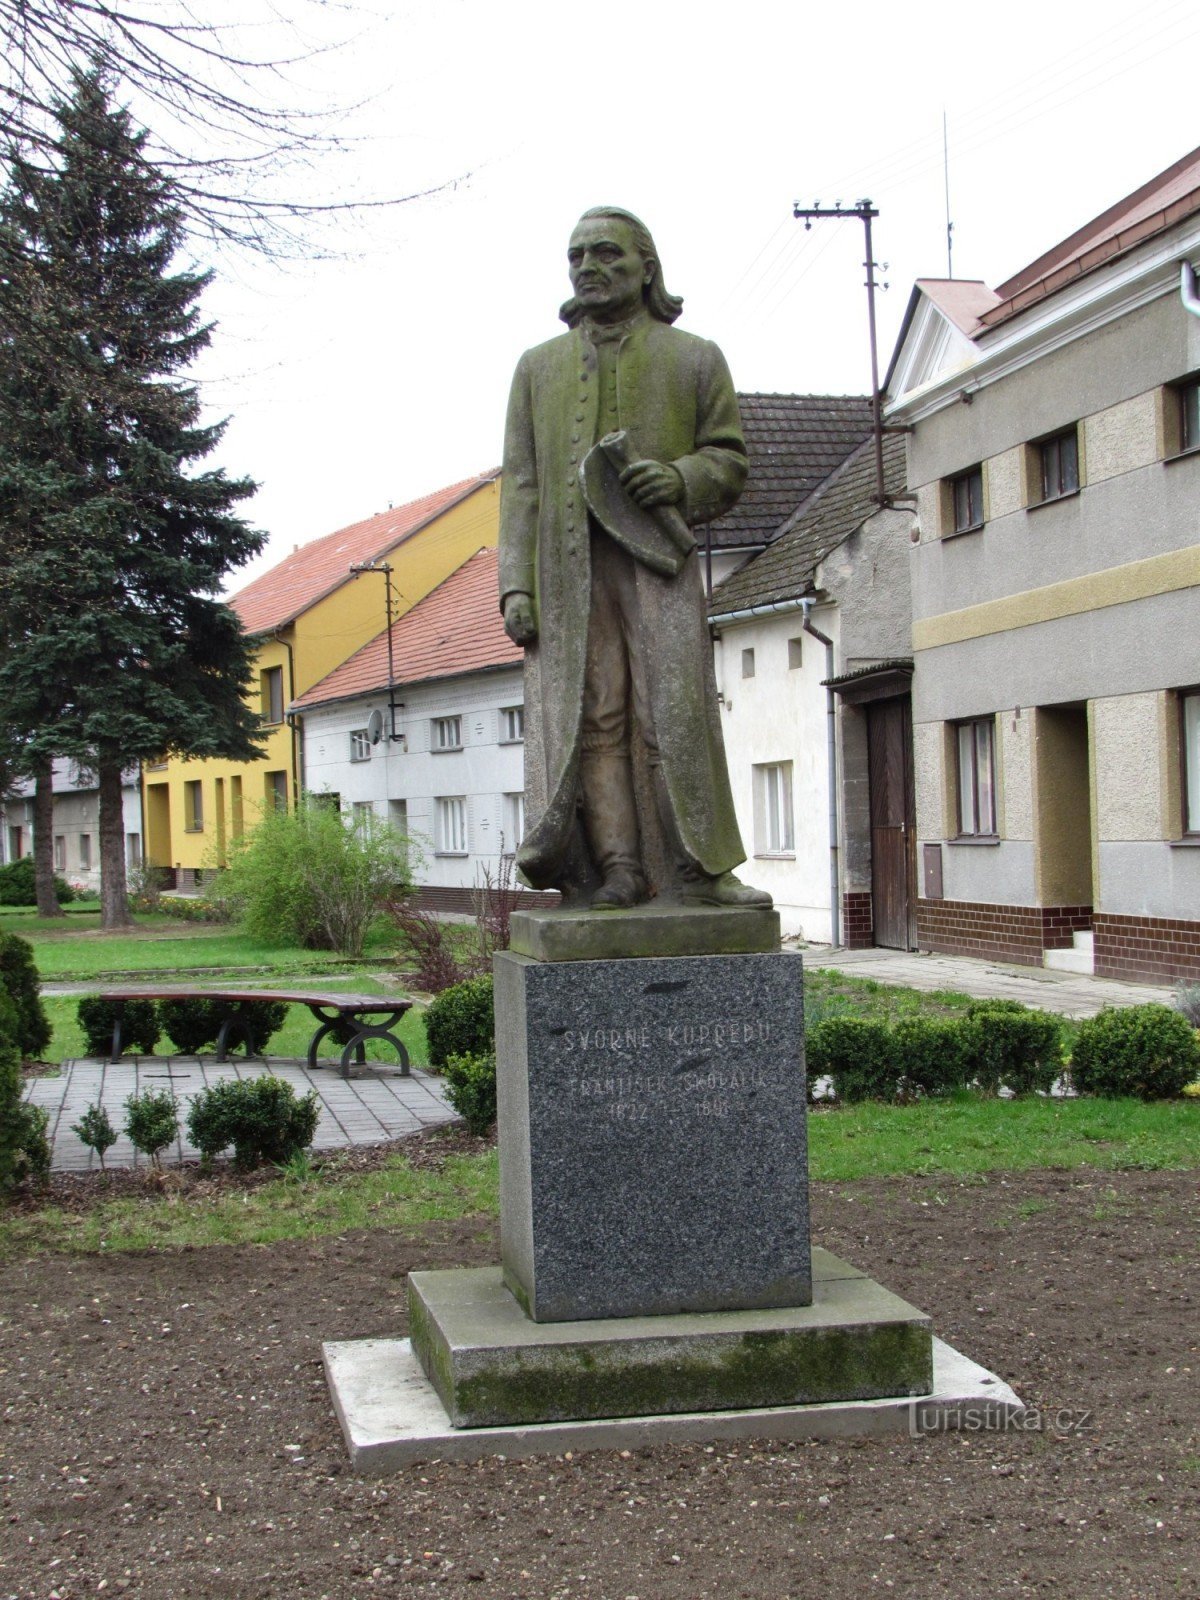 Μουσείο František Skopalík στο Záhlinice